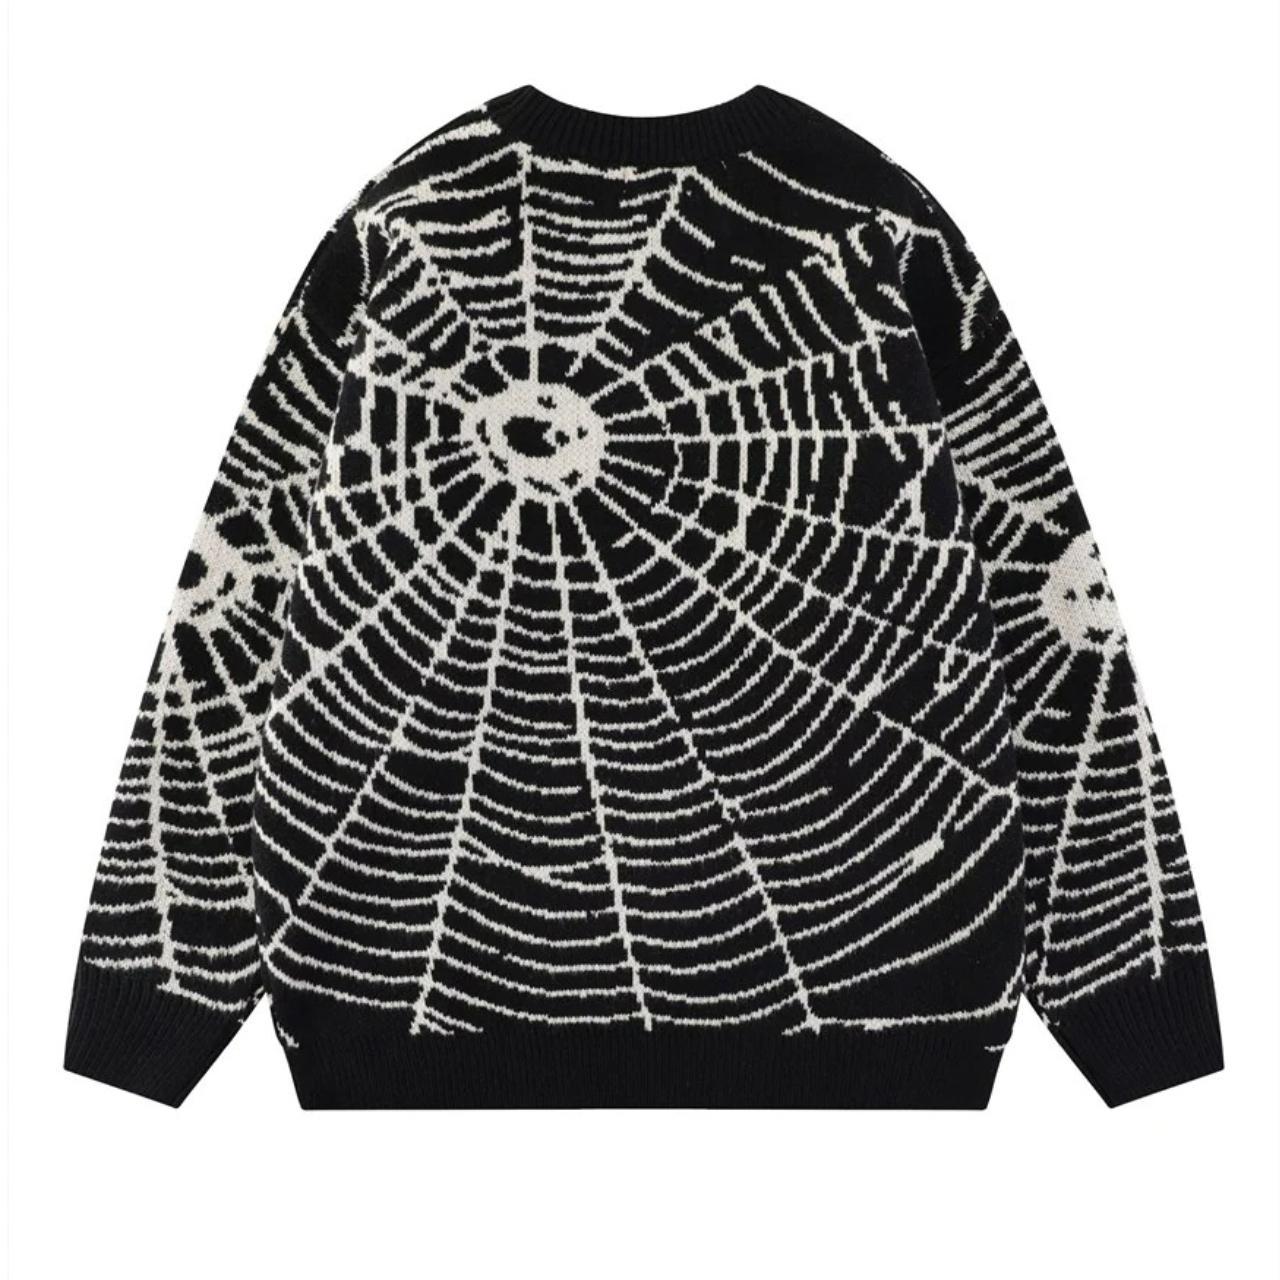 Spider web sweater knitted Gothic grunge jumper in... - Depop